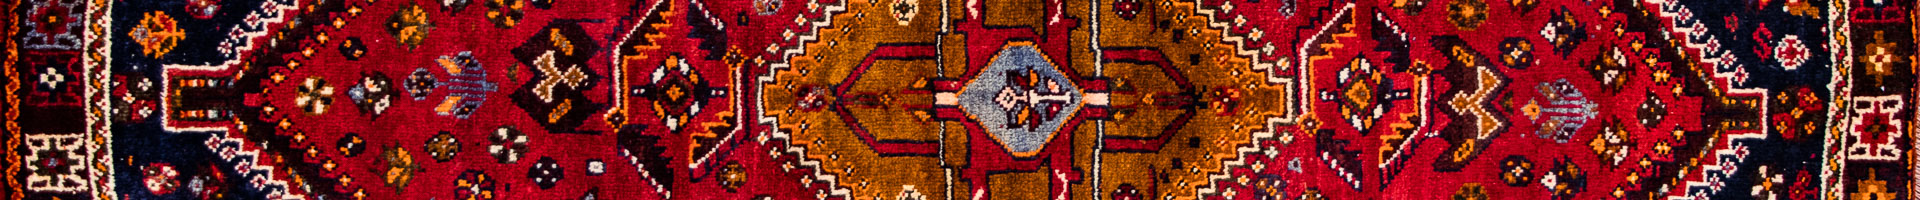 Shiraz Namdari Persian Carpet Rug N1Carpet